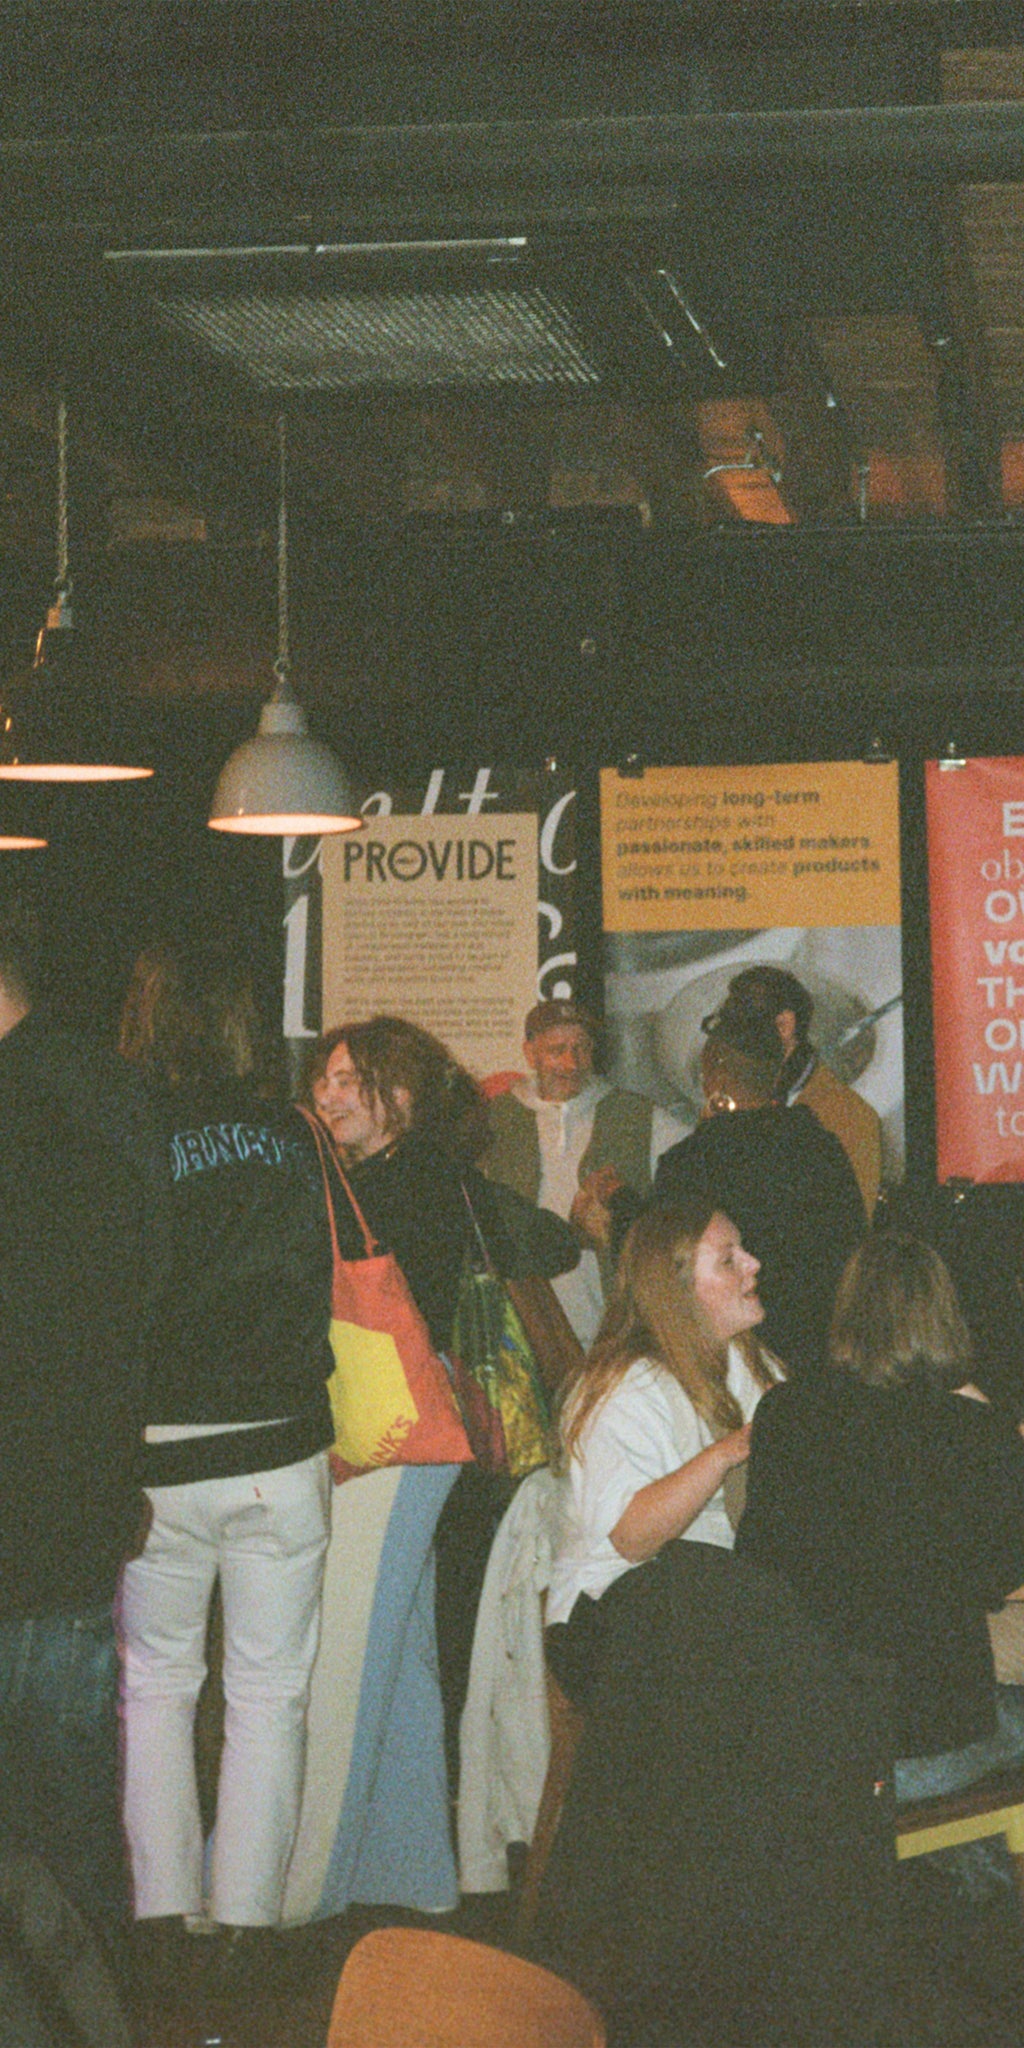 Provide's launch event at Artum, Birmingham.